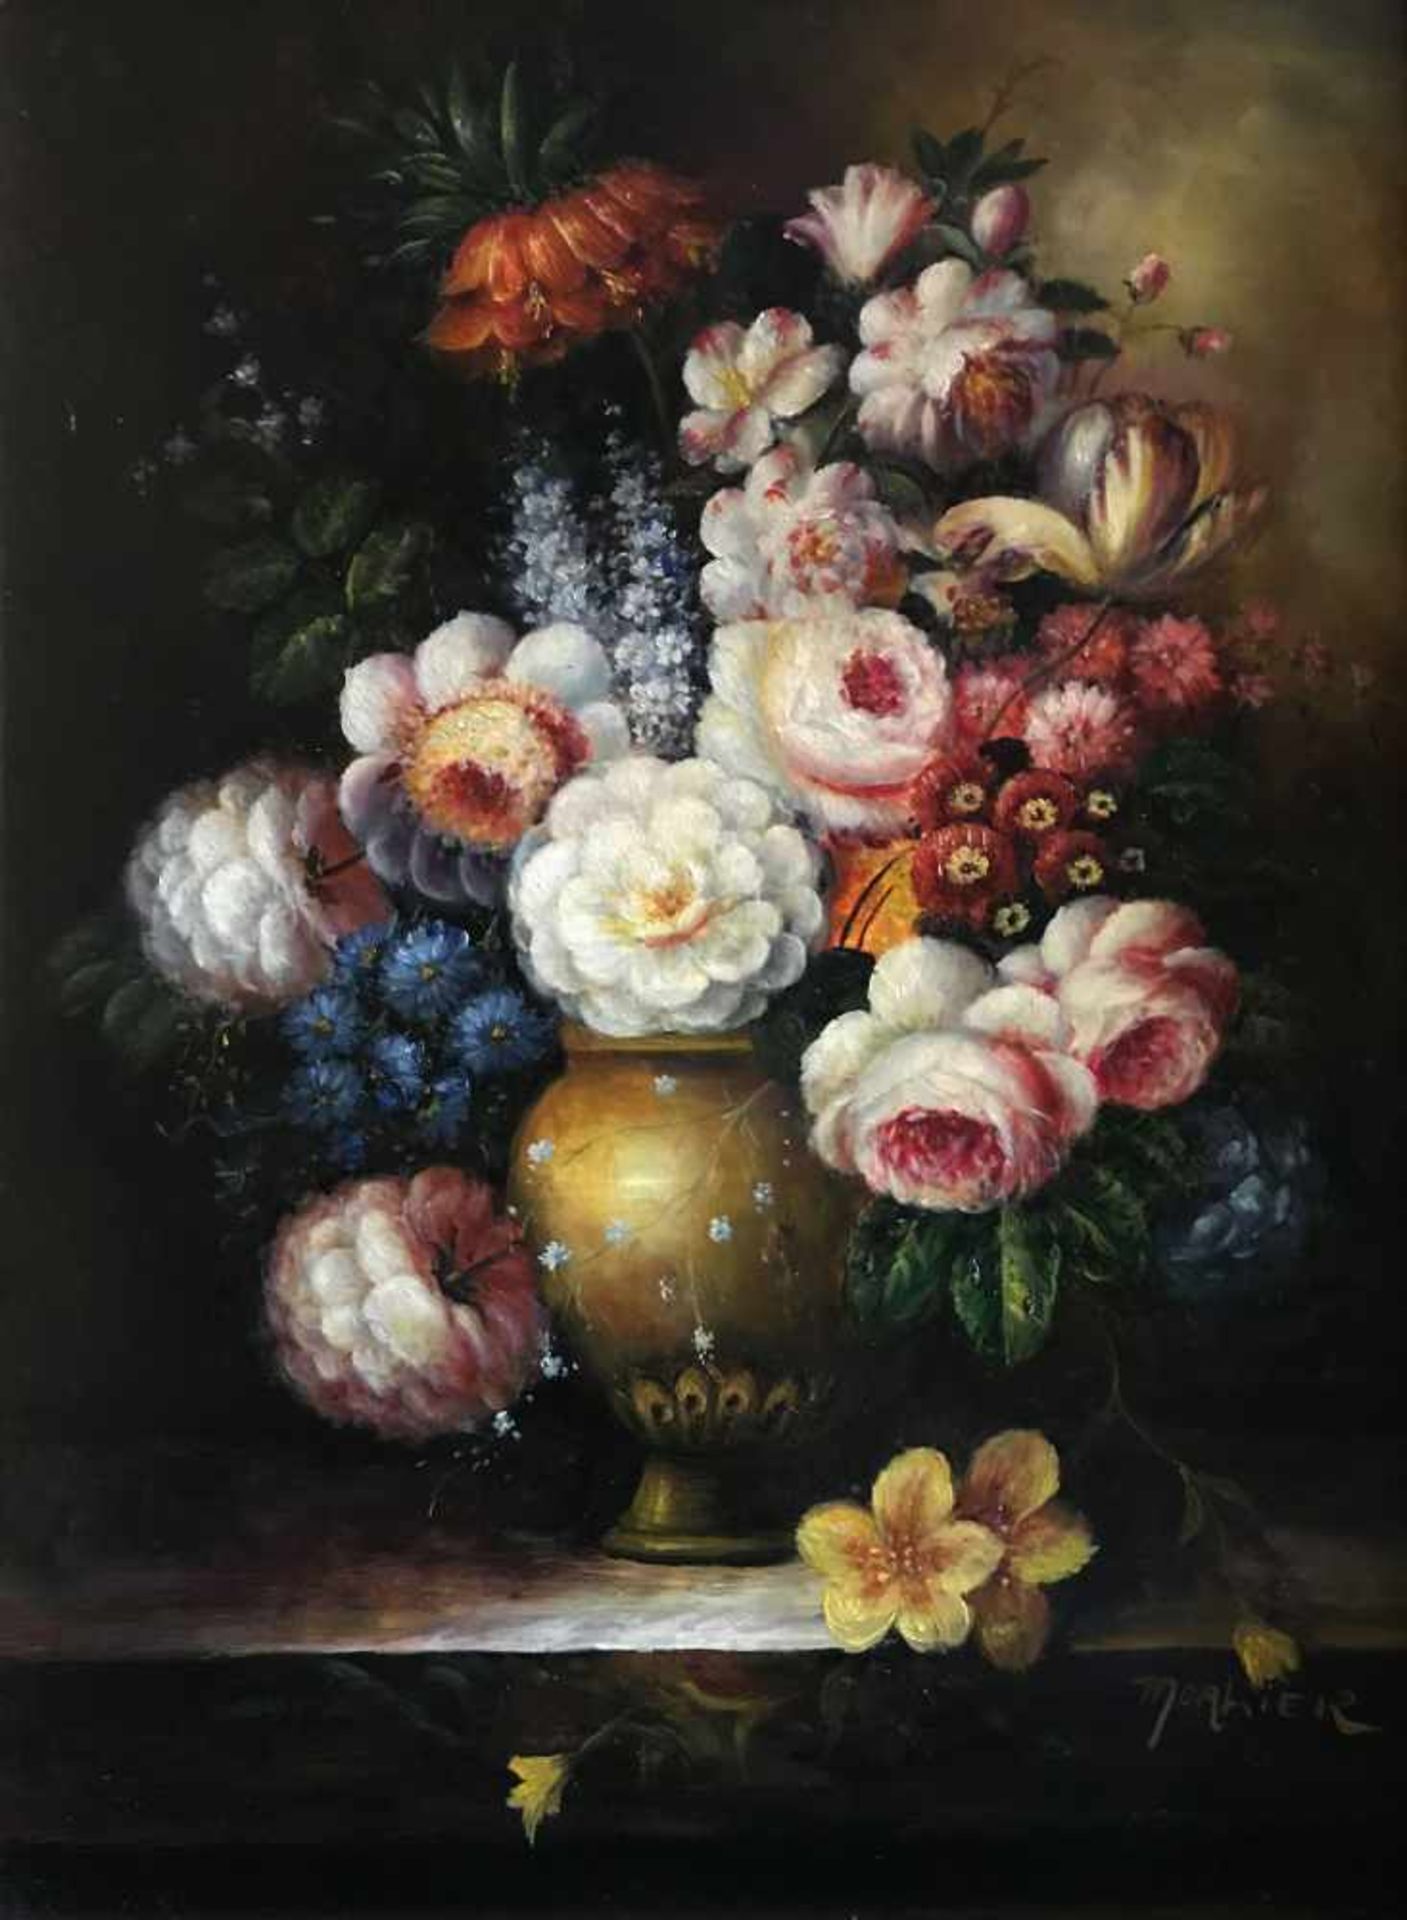 Unbekannter Künstler, Blumenstilleben: Blumenstrauß mit Rosen, Kaiserkronen, Tulpen etc. in einer